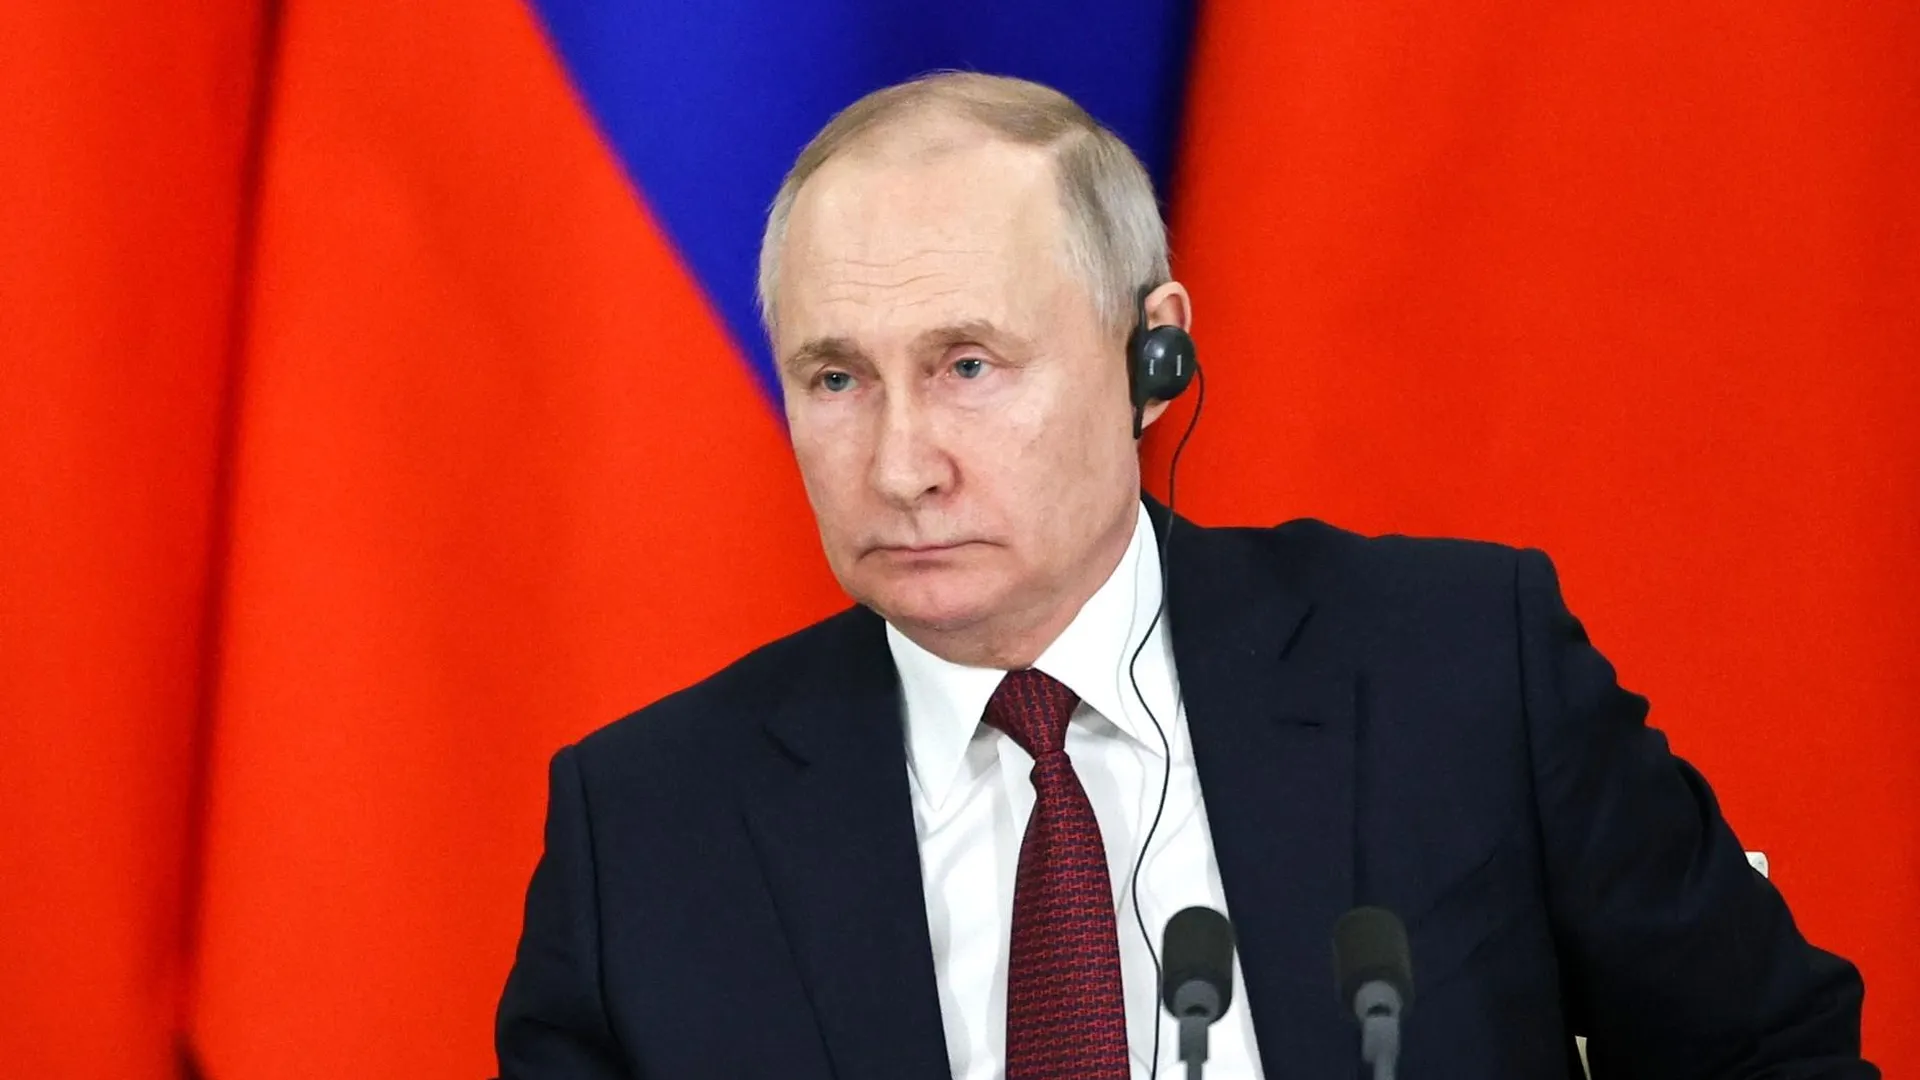 Визит Путина в Херсонскую область — серьезный сигнал